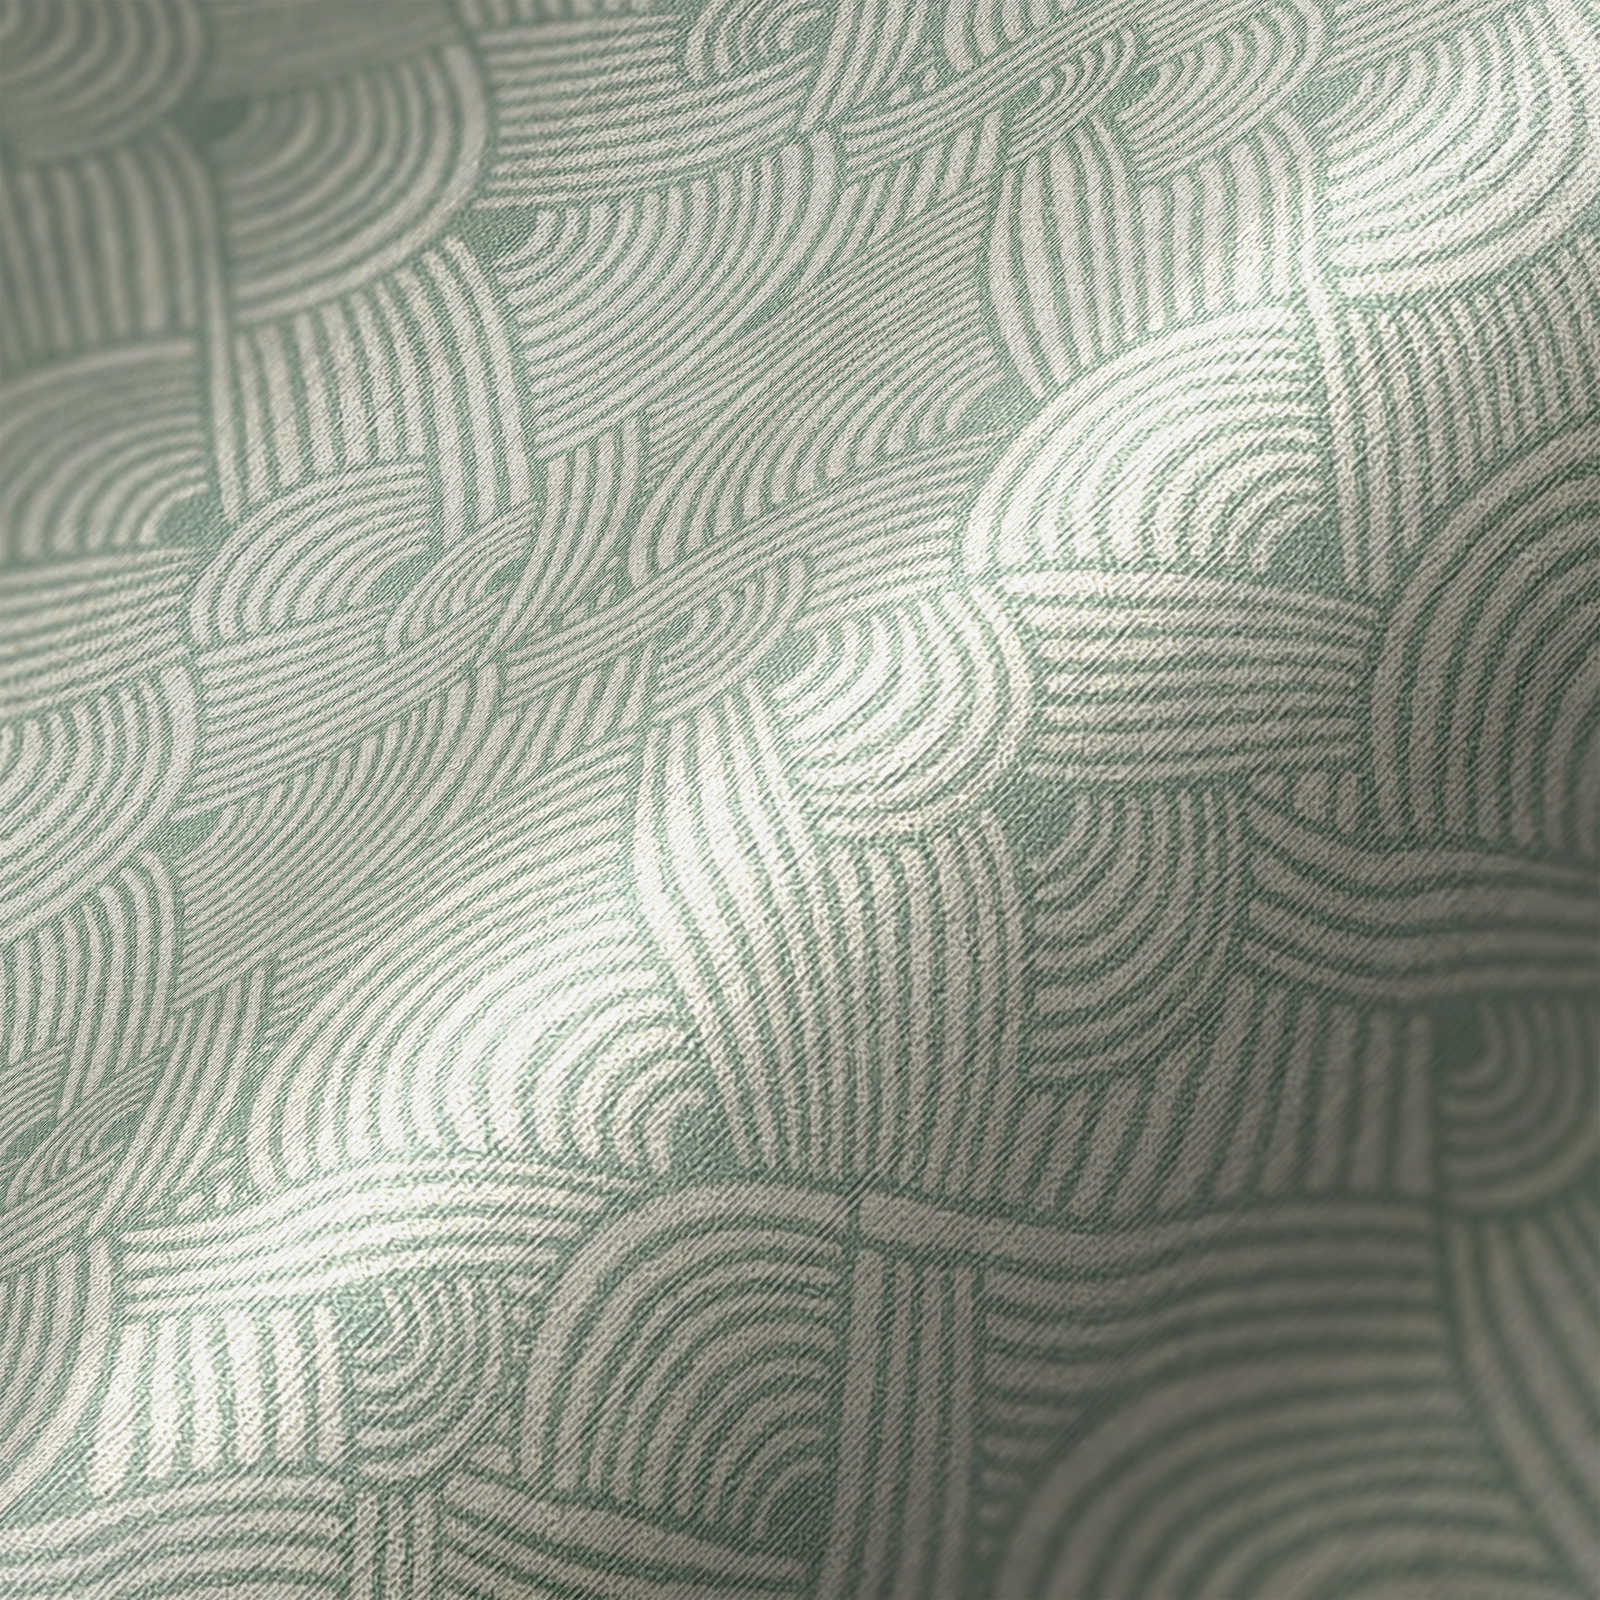             Papel pintado gráfico de ondas en colores tierra - verde, blanco, azul
        